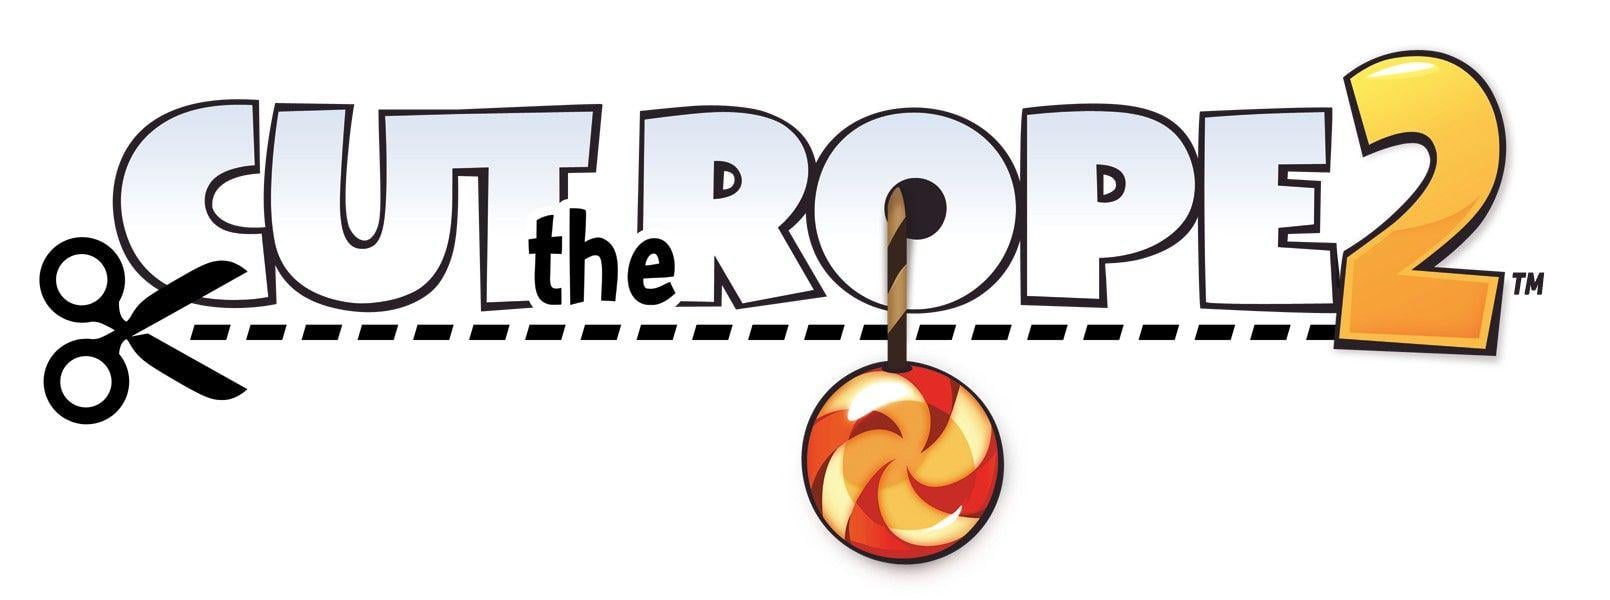 Cut the Rope Logo - The cut Logos